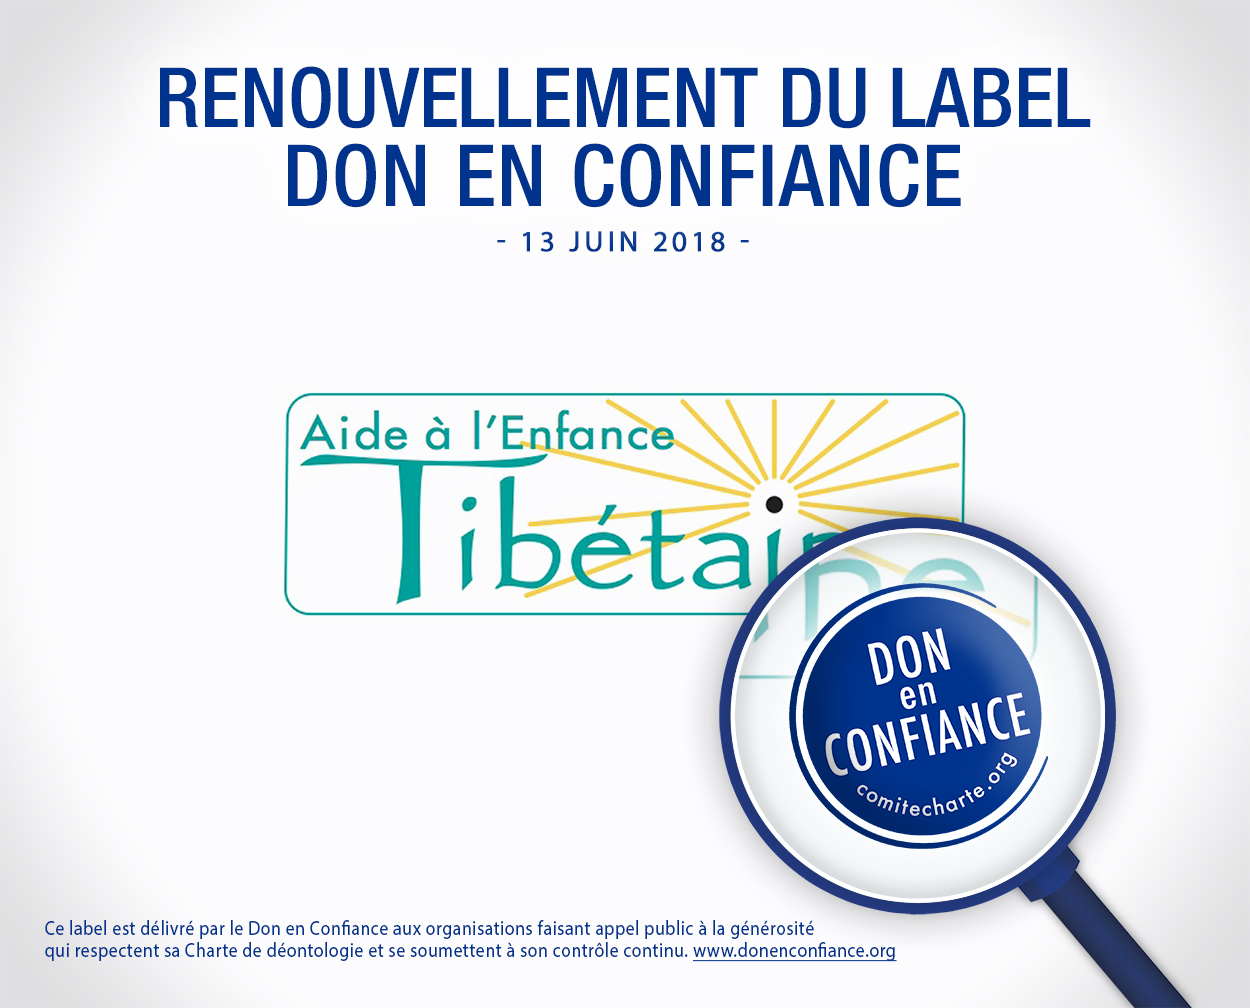 renouvellement_label_AideALEnfanceTibetaine_20180613